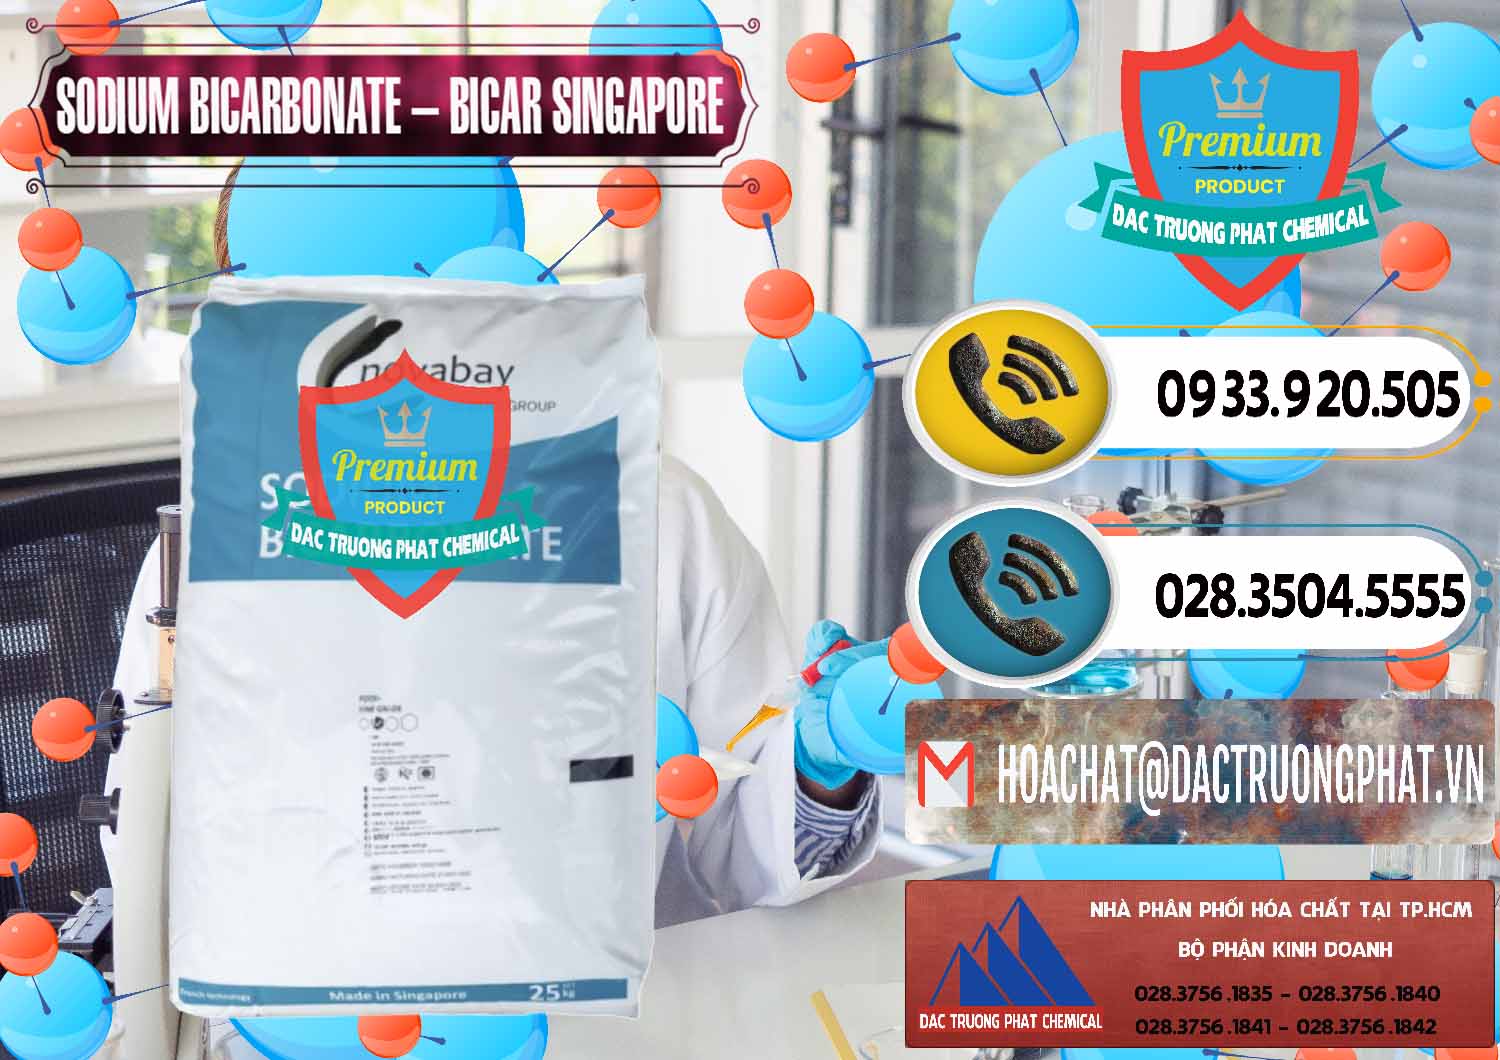 Chuyên cung cấp ( bán ) Sodium Bicarbonate – Bicar NaHCO3 Singapore - 0411 - Nhà nhập khẩu và phân phối hóa chất tại TP.HCM - hoachatdetnhuom.vn